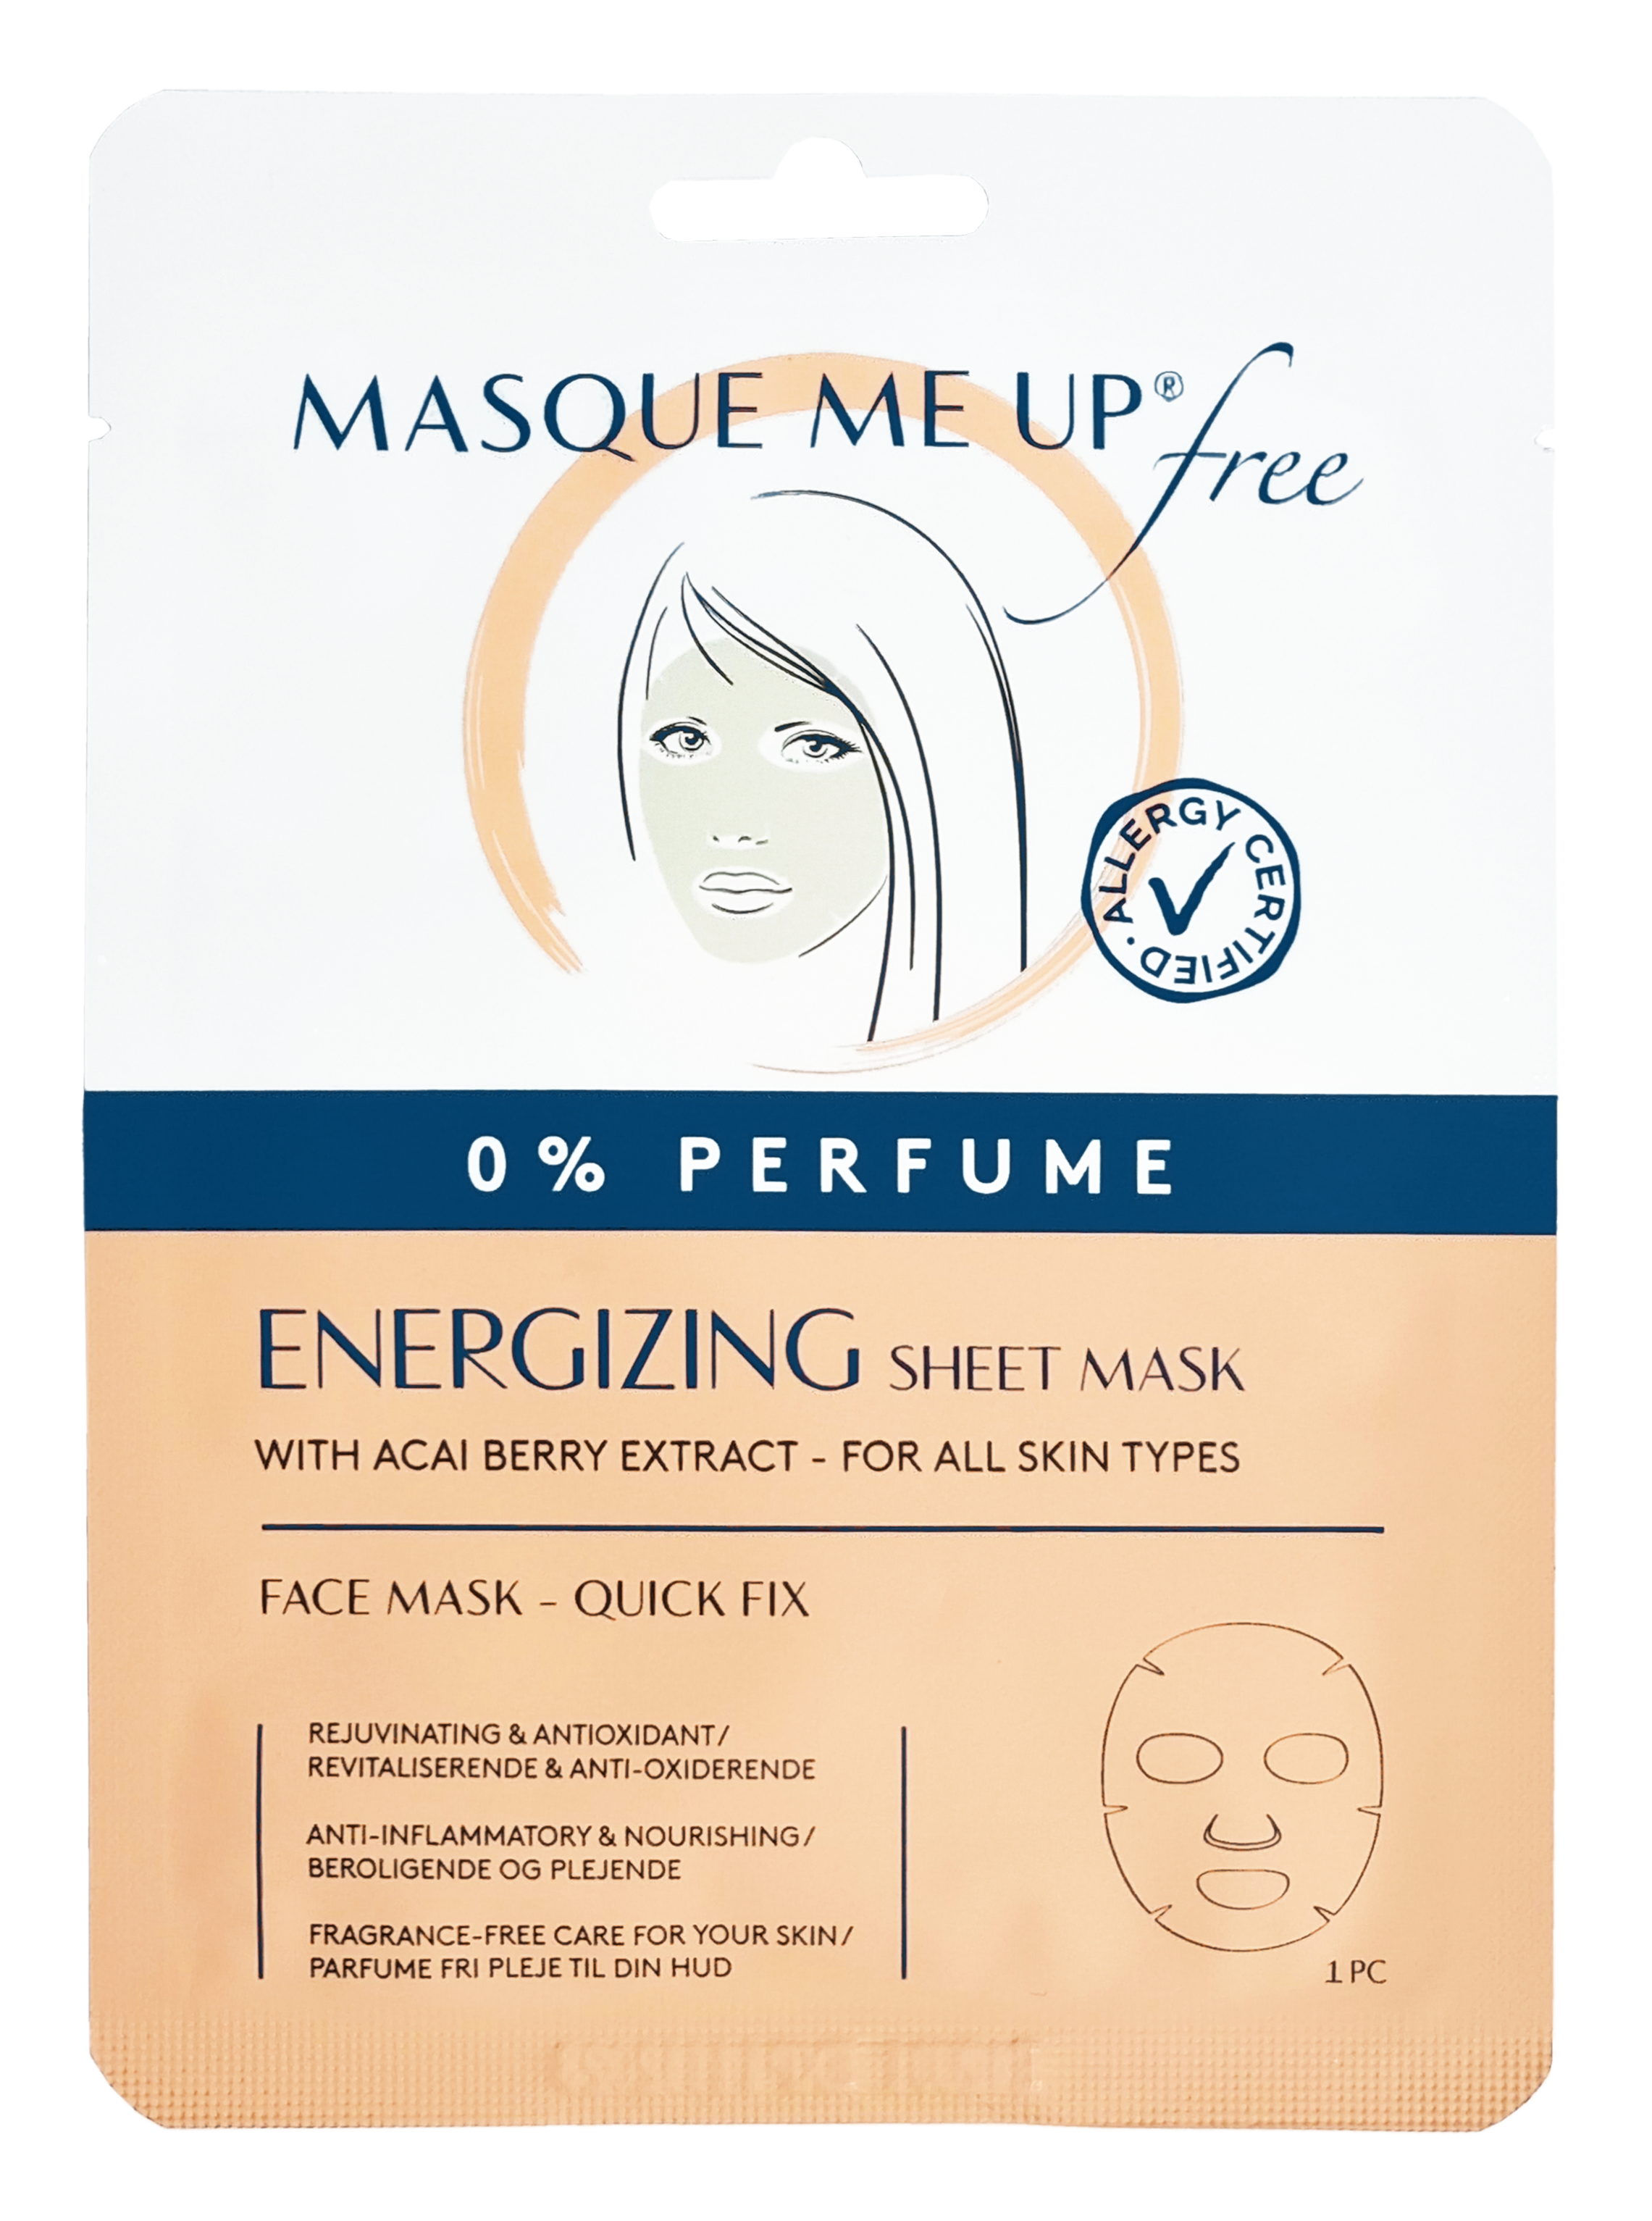 Free Energizing Sheet Mask